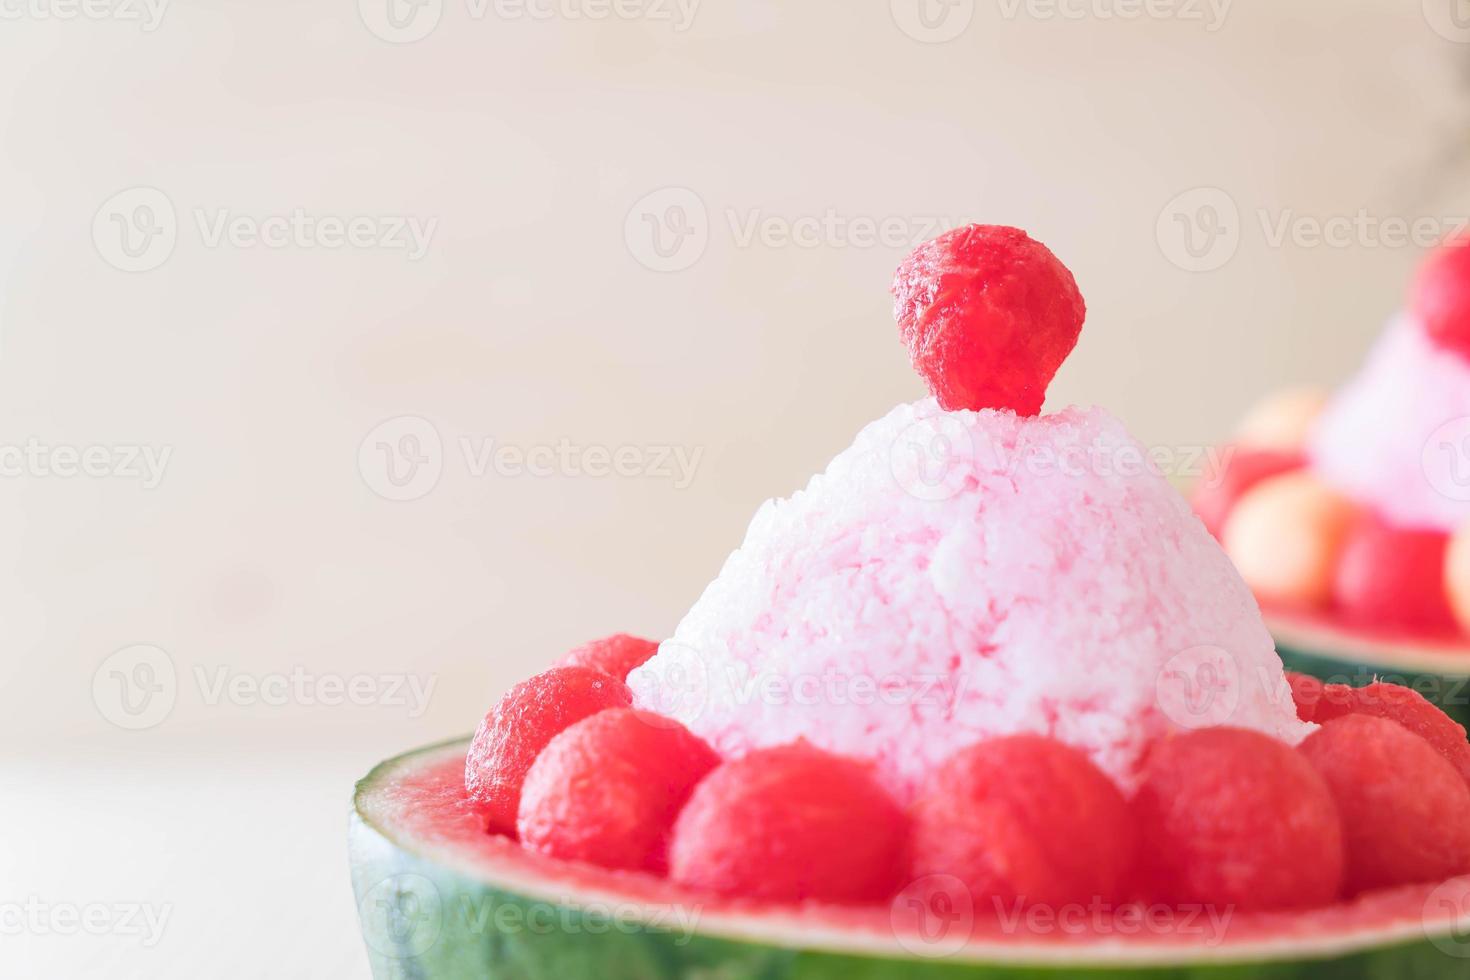 sobremesa bingsu de melancia na mesa foto